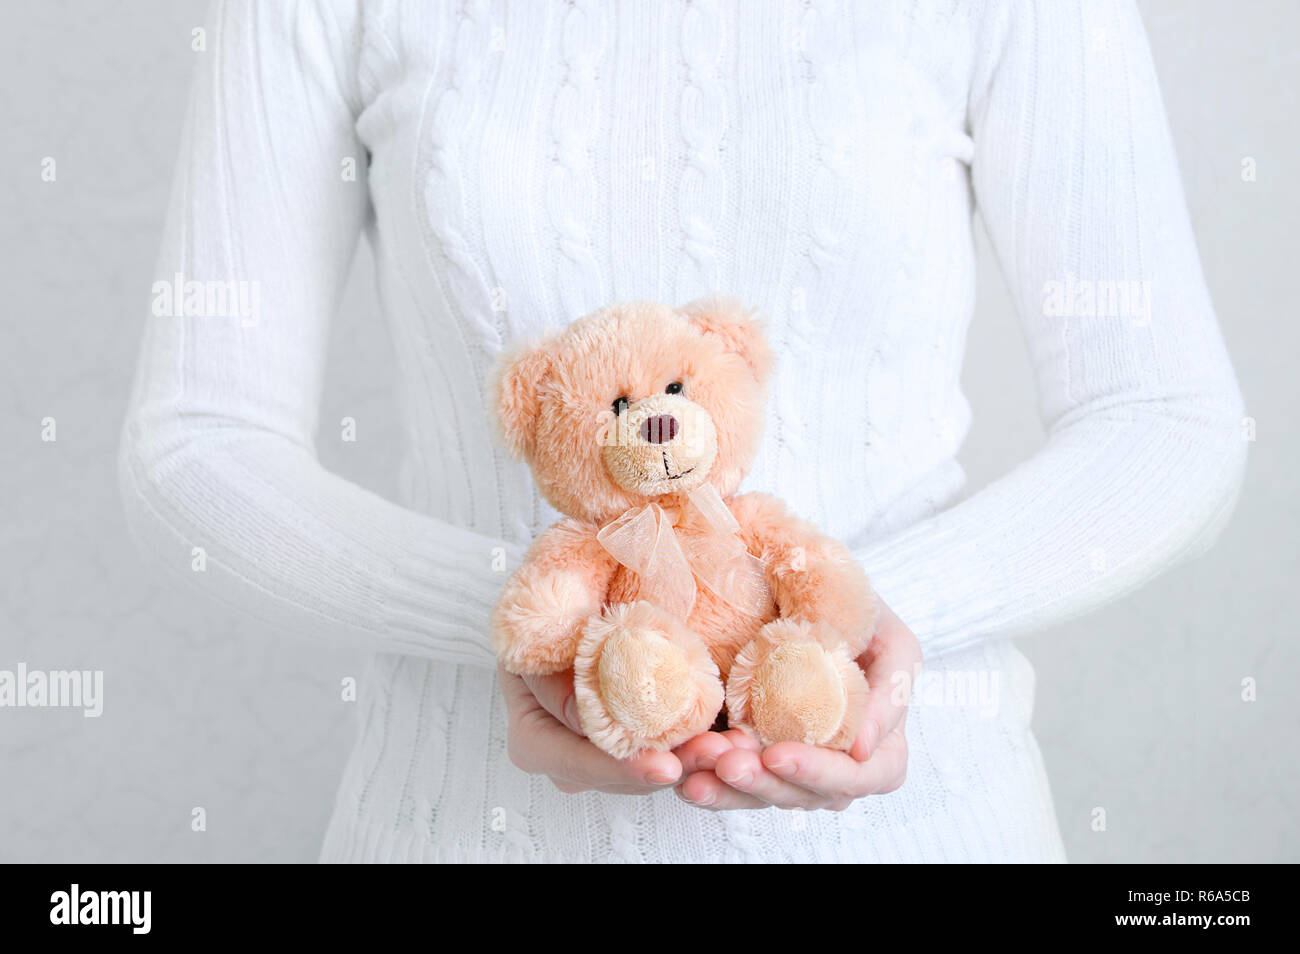 Jeune fille dans un chandail blanc tenant un ours en peluche. Arrière-plan blanc. Close-up. Banque D'Images